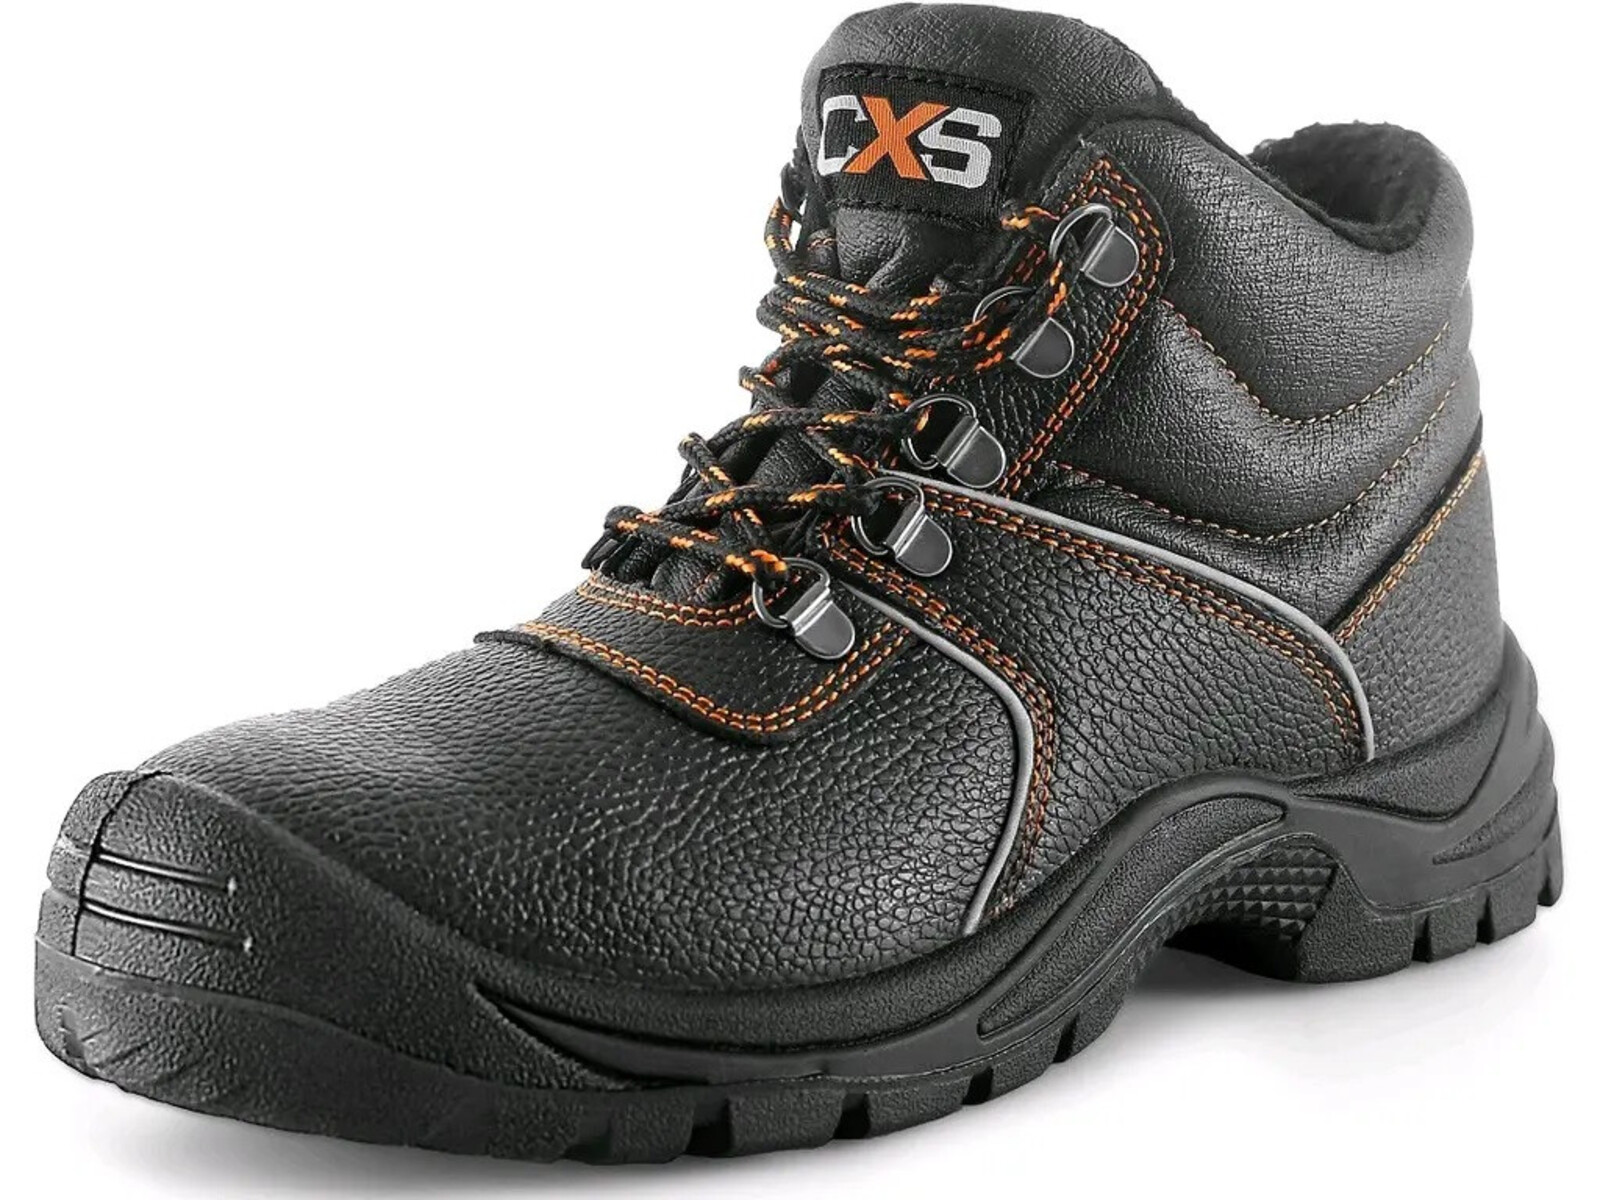 Zimná bezpečnostná členková obuv CXS Stone Apatit Winter S3 SRC - veľkosť: 37, farba: čierna/oranžová